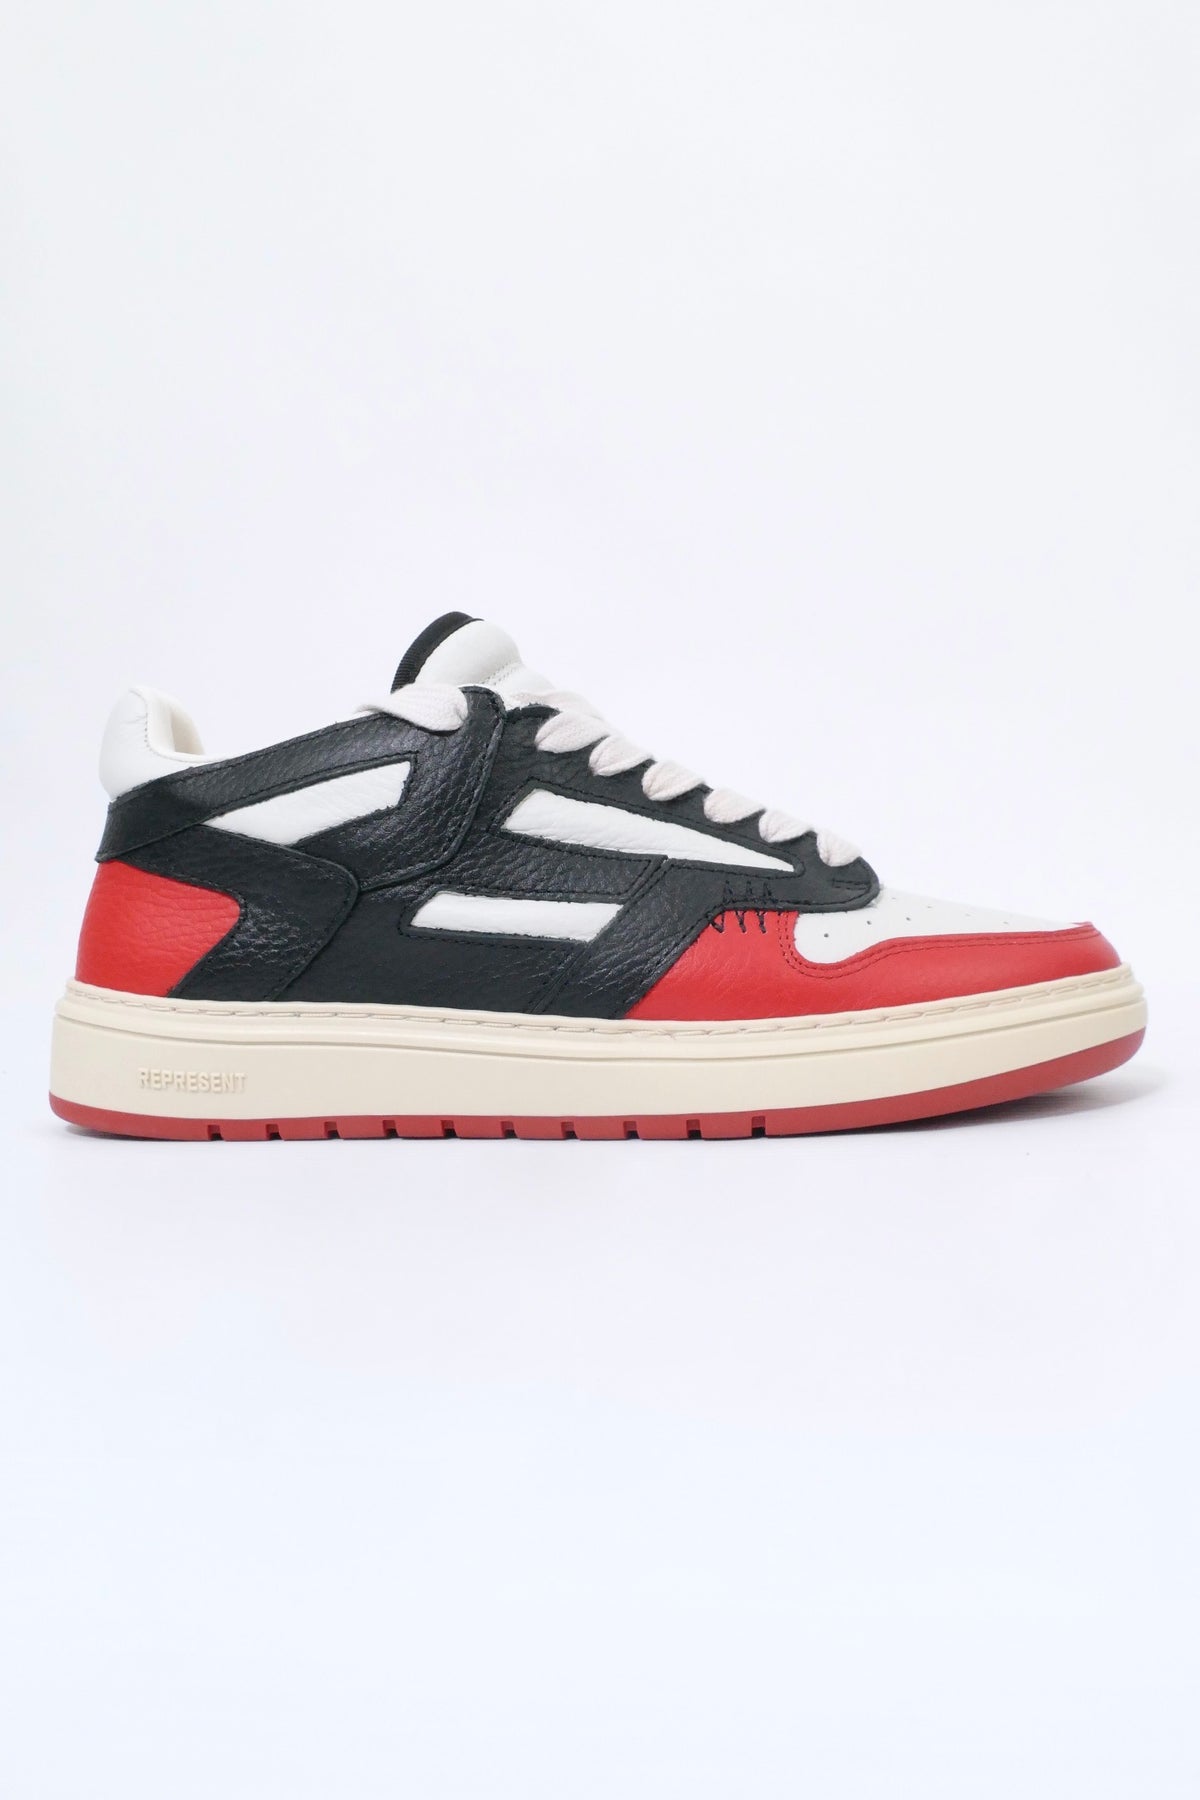 Represent Reptor Low Sneakers - Black Burnt Red